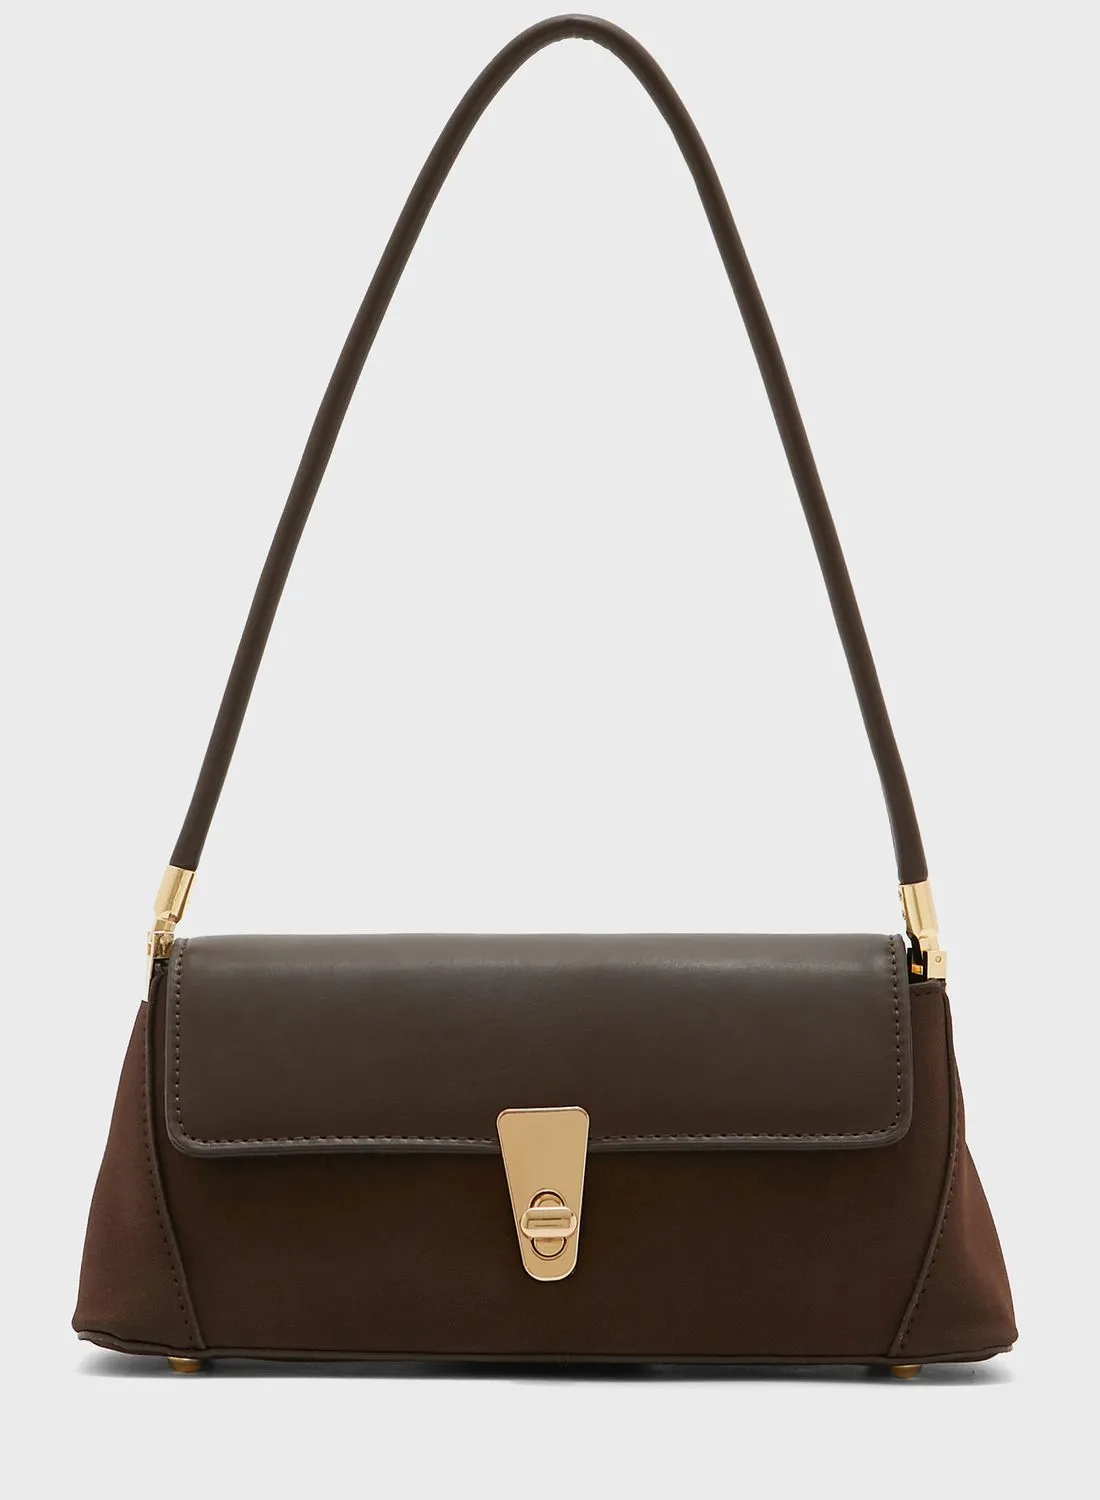 ELLA Trapeze Baguette Handbag